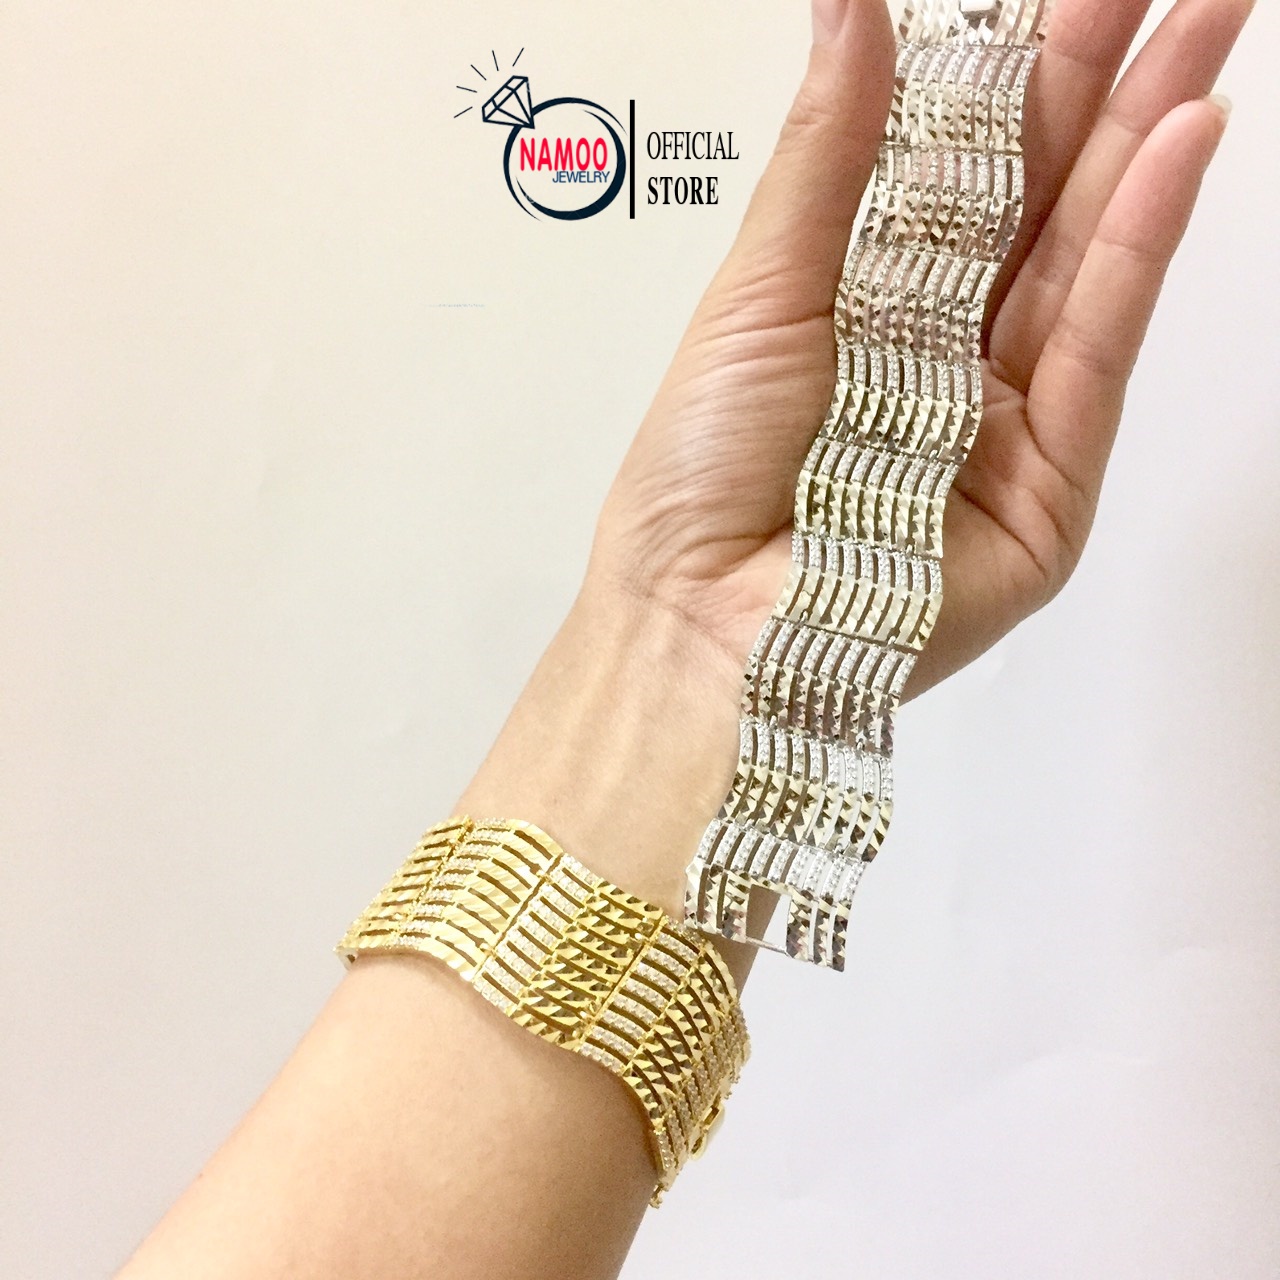 Những chiếc lắc tay nữ Namoo mạ vàng được hoàn thiện bằng cách mạ vàng 24K, đem lại cho người đeo sự quý phái và đẳng cấp. Với thiết kế đơn giản nhưng tinh tế, phụ nữ có thể phối hợp với nhiều trang phục khác nhau trong sinh hoạt hàng ngày.